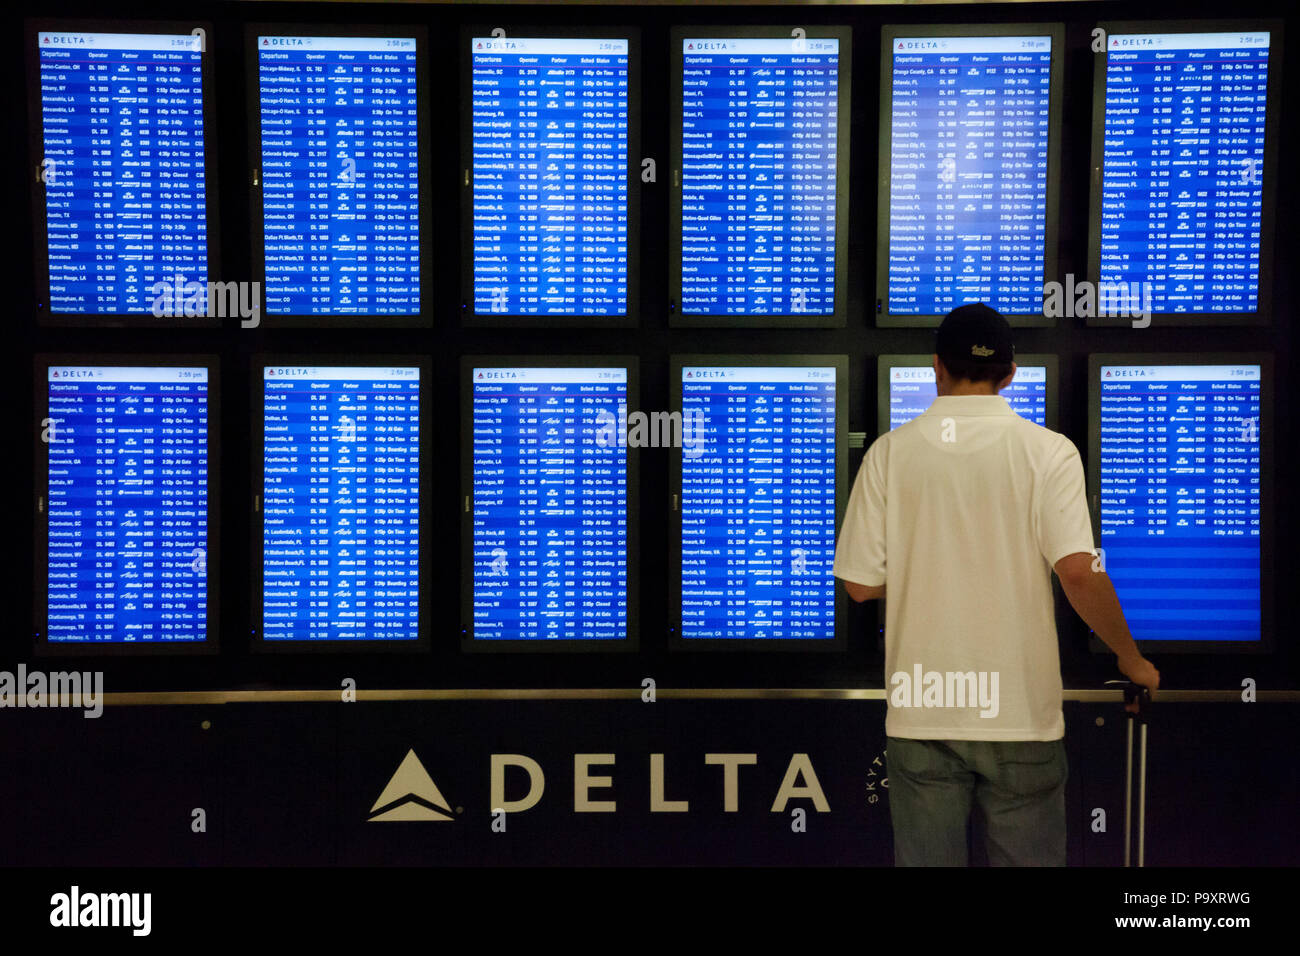 Ein Fluggast steht in der Nähe der Flight Information Panel der Darstellung Dienstleistungen von Delta Airlines und seinen Partnern in Atlanta International Airport, USA Stockfoto